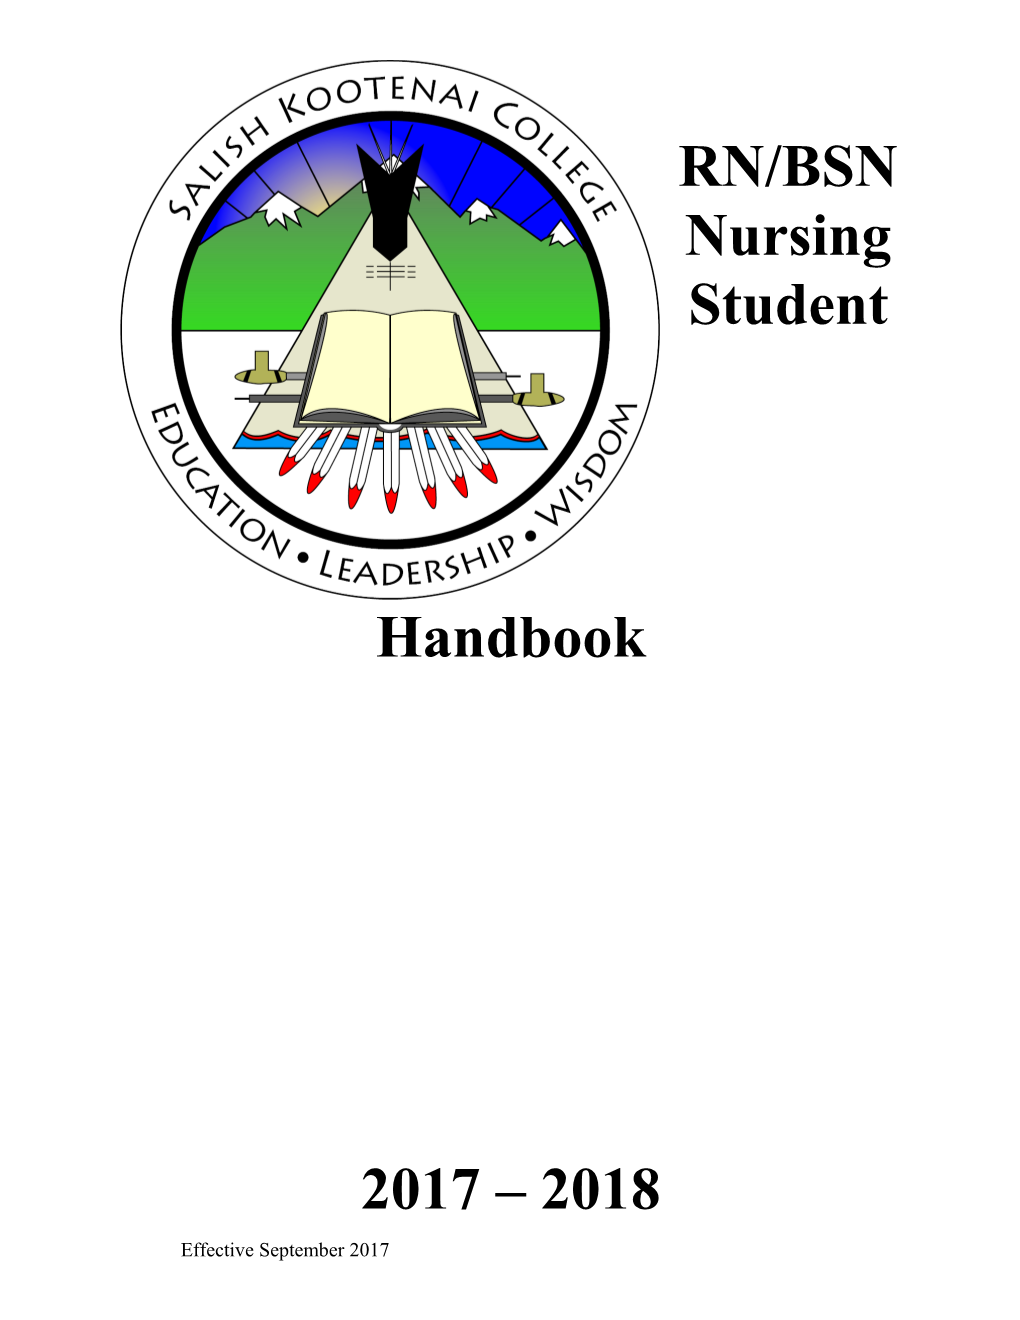 RN/BSN Nursing Student Handbook